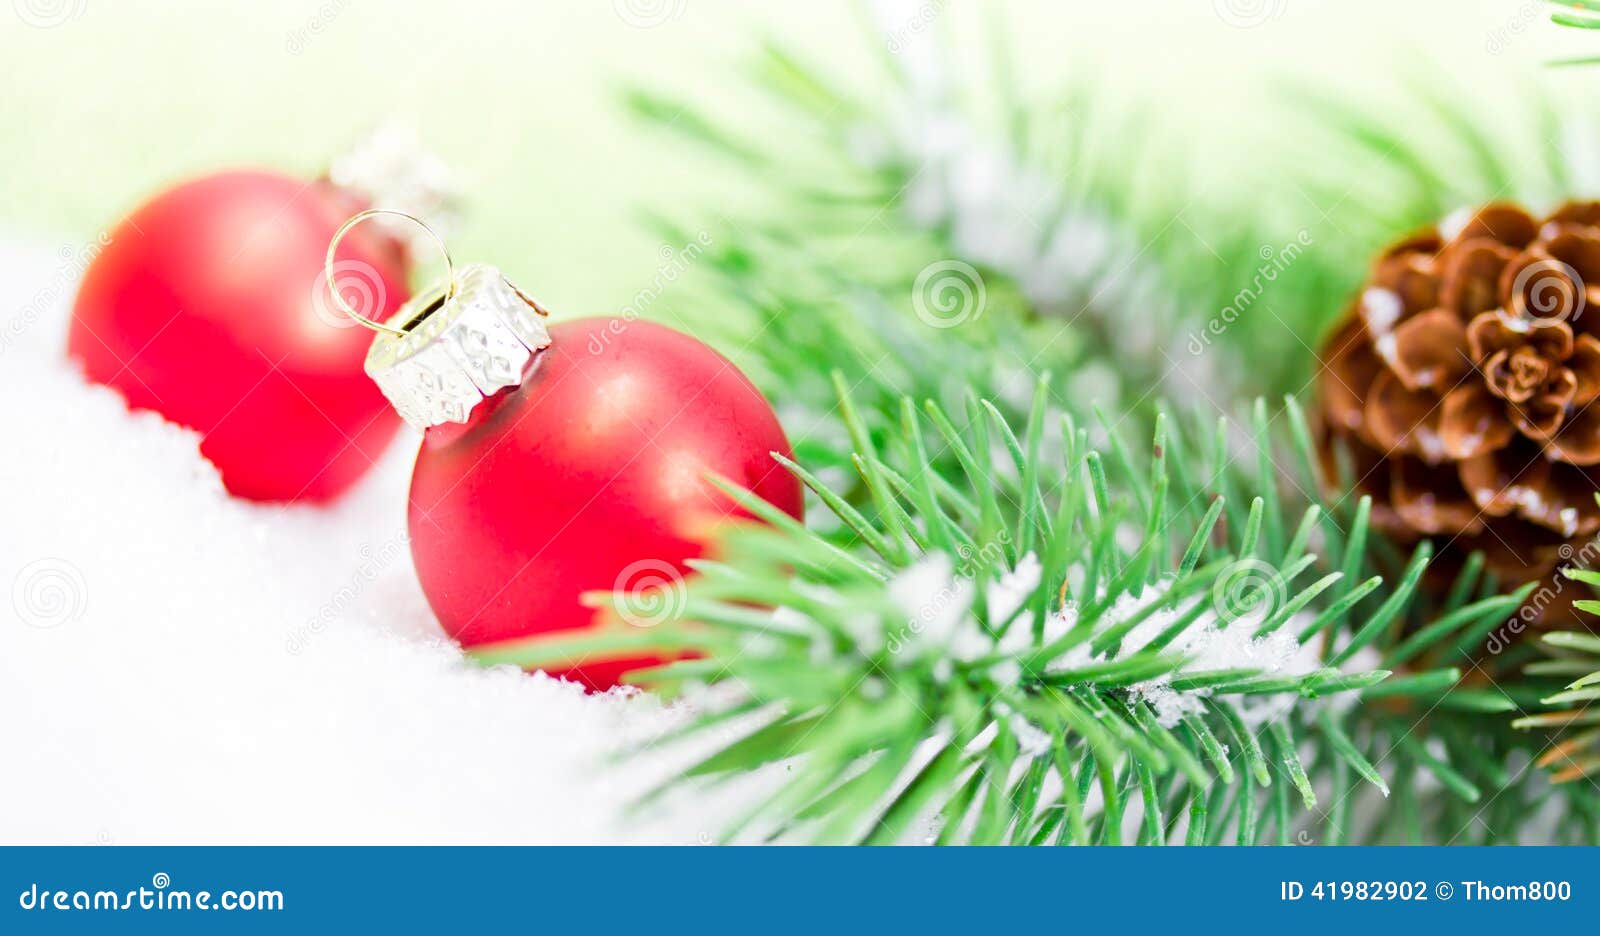 Kerstmisdecoratie Met Rode Ballen Stock Foto - Image of seizoengebonden ...